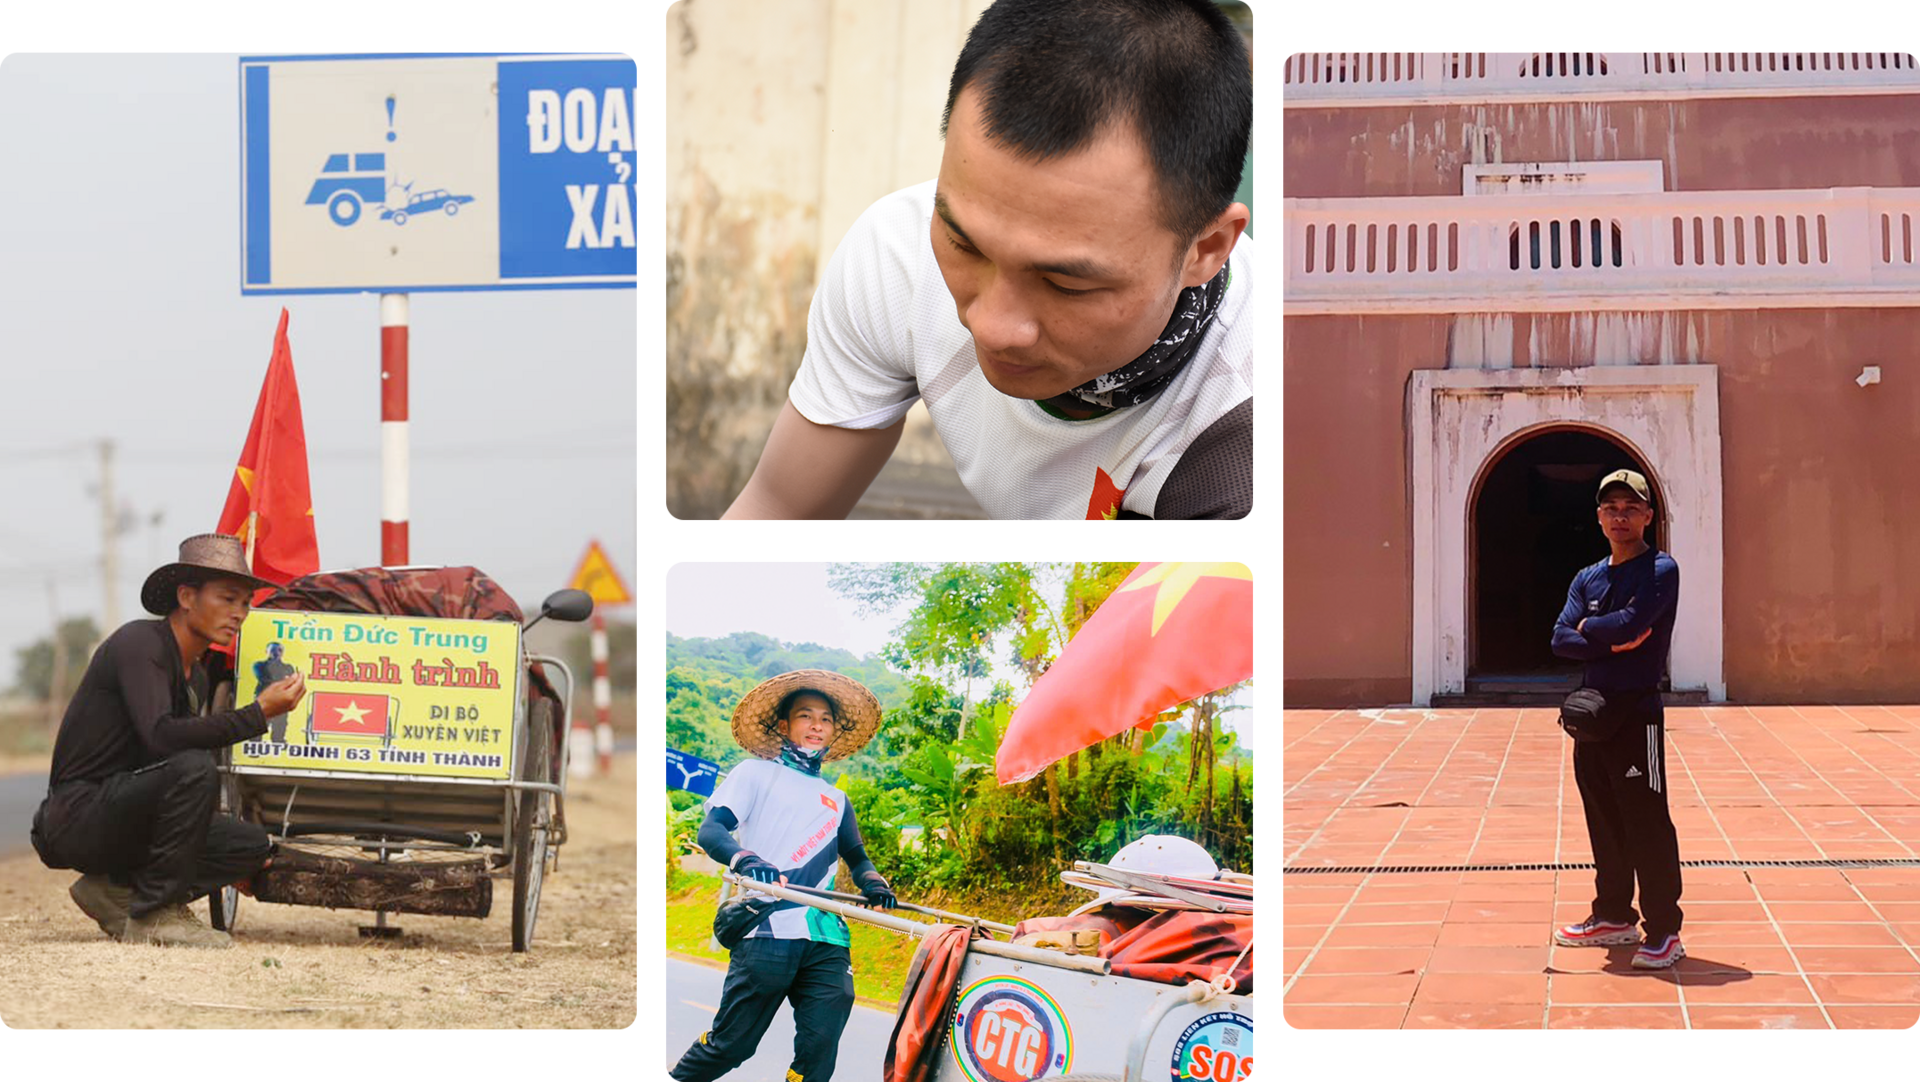 Hành trình 2 năm đi bộ hút đinh xuyên Việt của chàng trai xứ Nghệ - 4